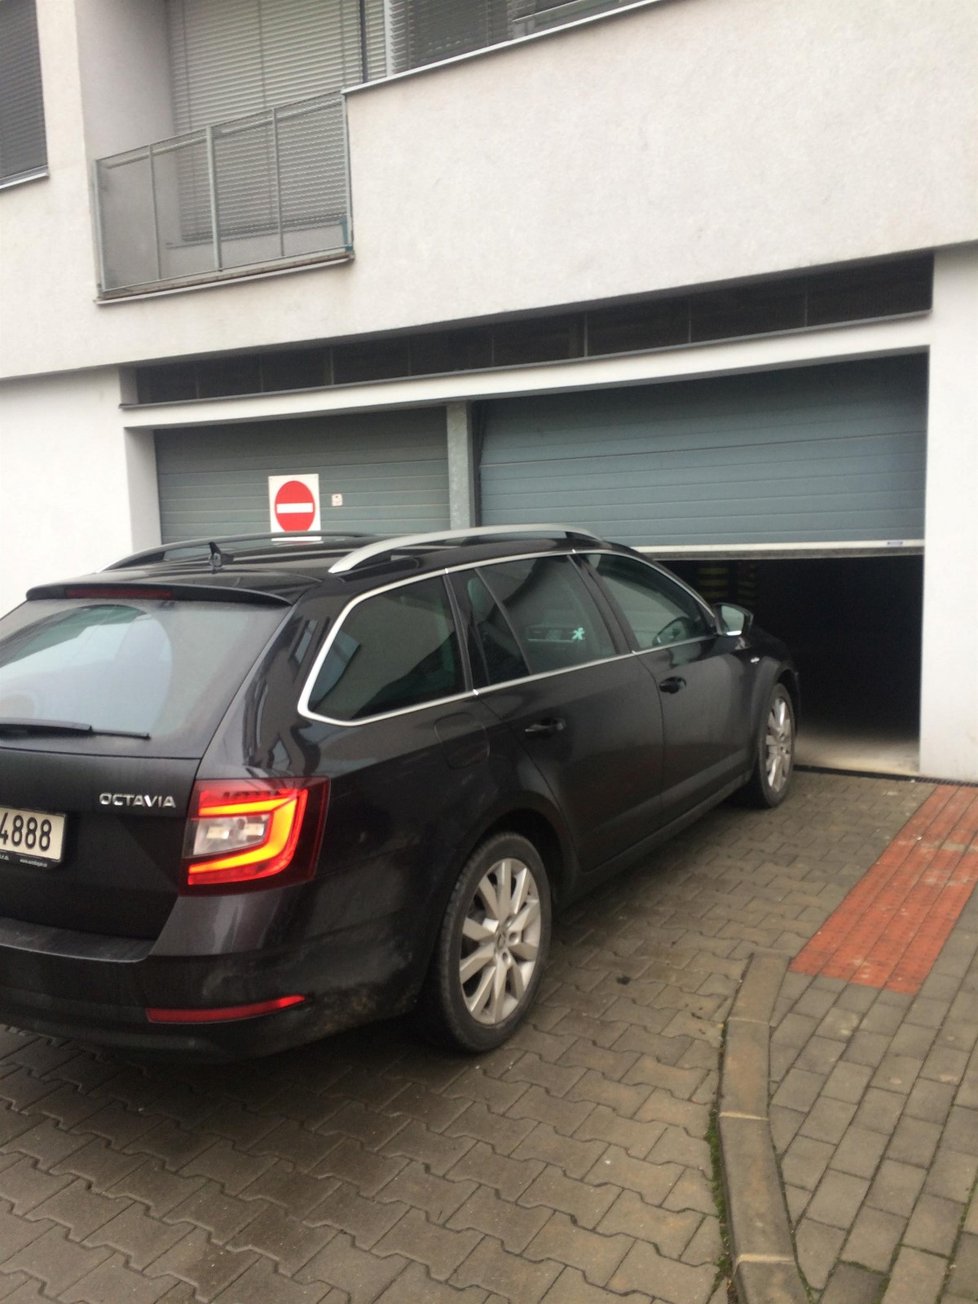 Výtah parkovacího domu v Kopečné ulici 9 v Brně správci budovy do vyšetření případu uzavřeli.